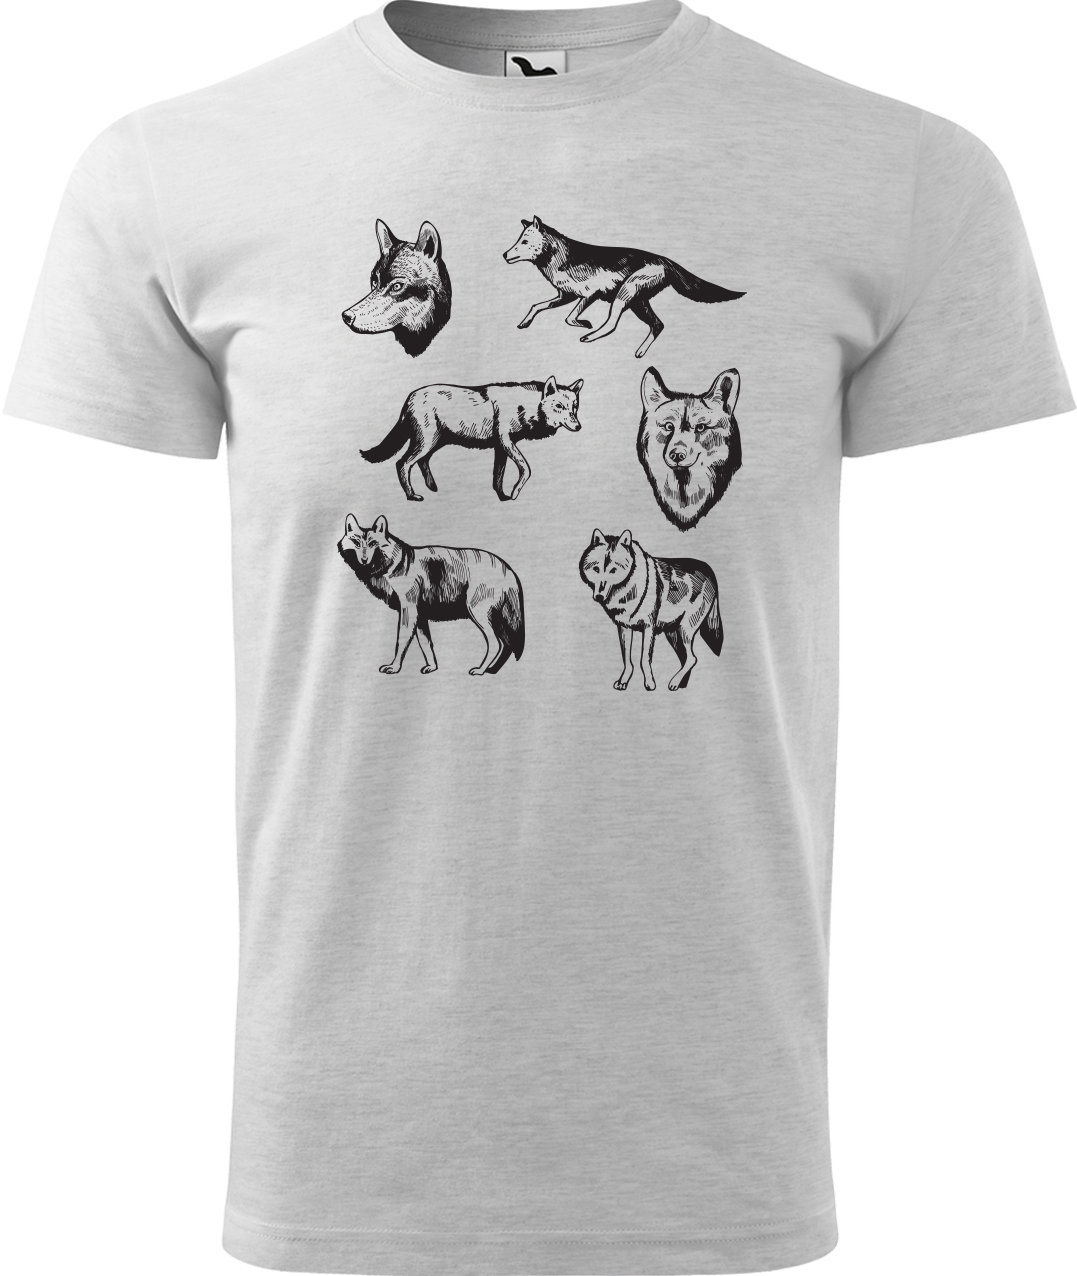 Pánské tričko s vlkem - Vlci Velikost: M, Barva: Světle šedý melír (03), Střih: pánský